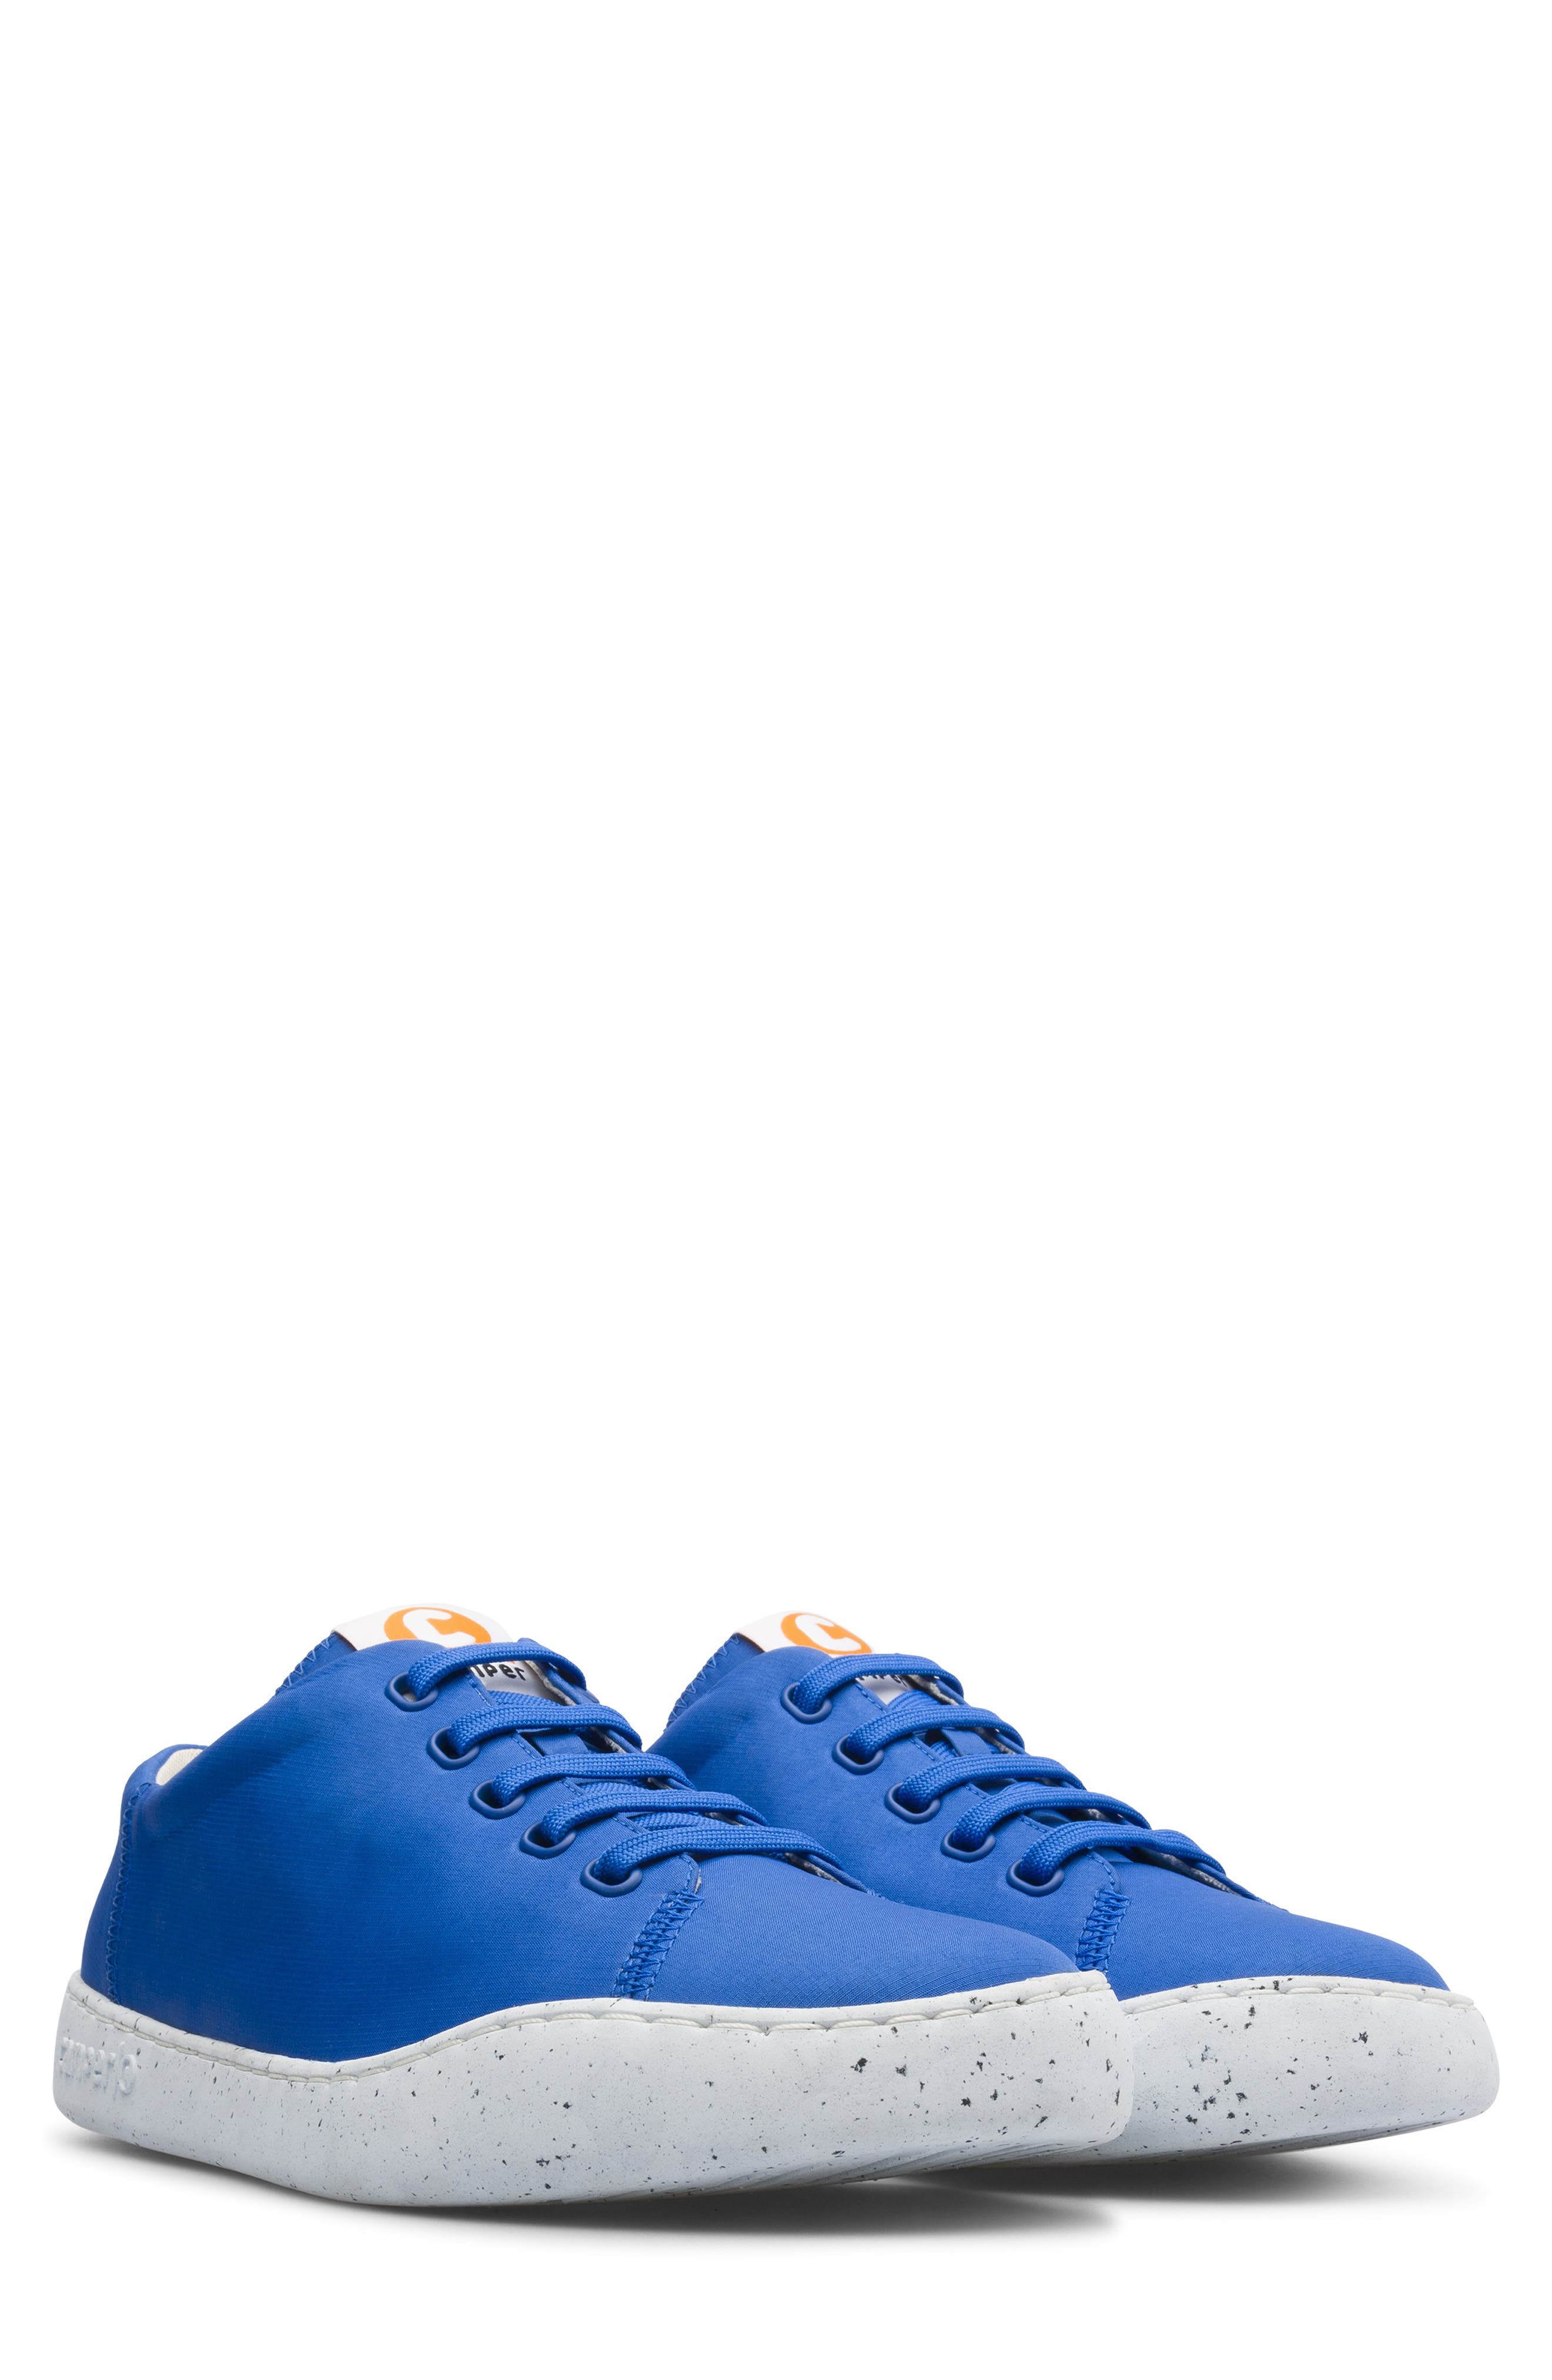 gunstig gat Kolonisten Camper Peu Touring Sneaker In Medium Blue | ModeSens